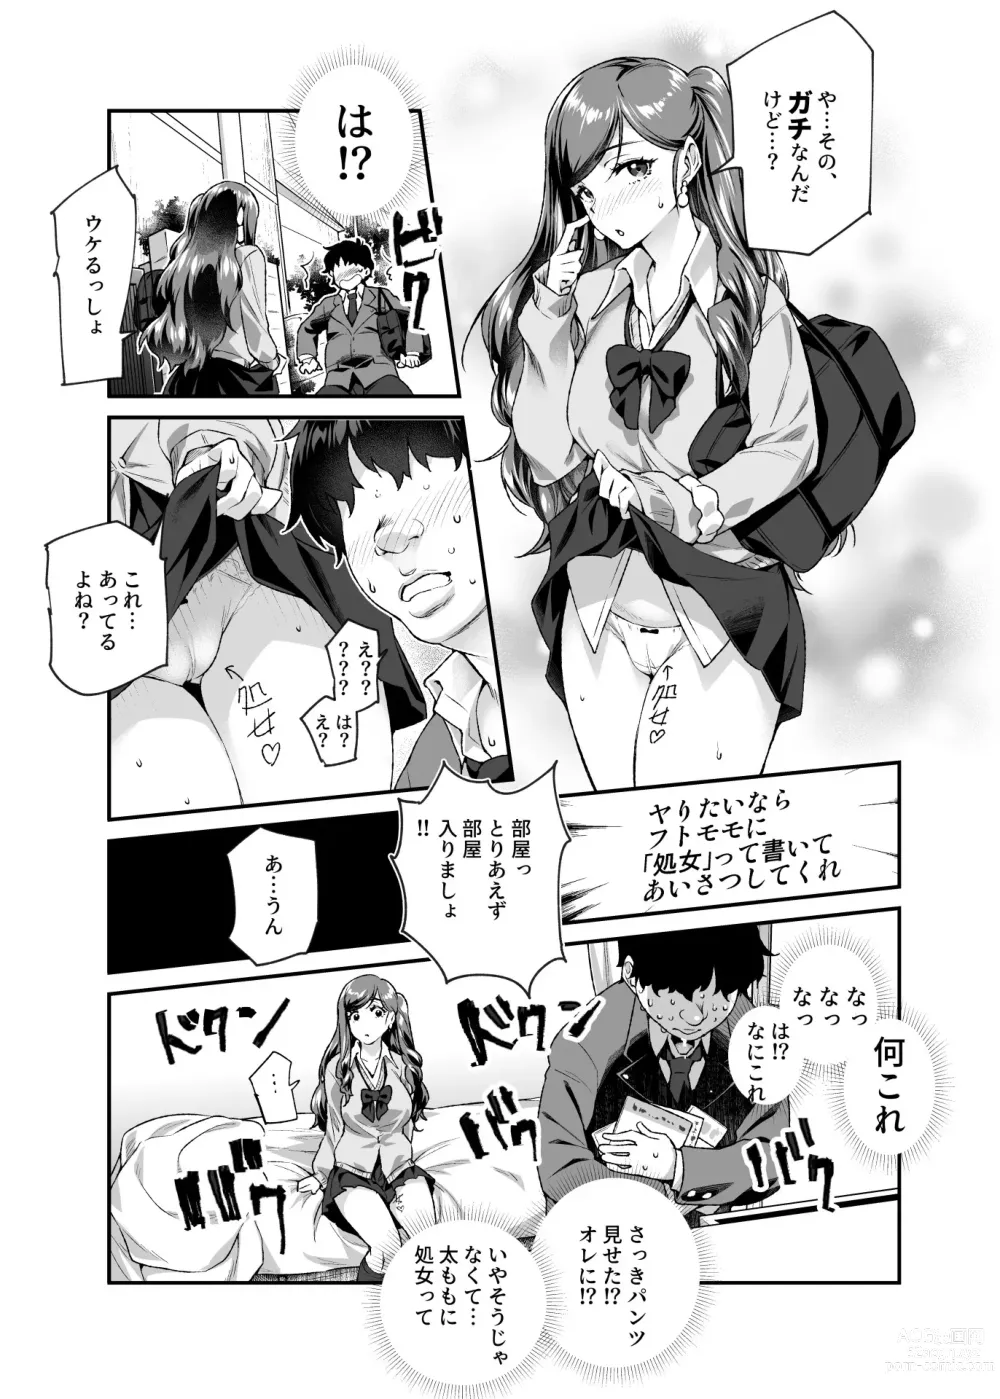 Page 6 of doujinshi Ore de Shojohaka Sureba Shiawase ninaruto Bazzutte EX